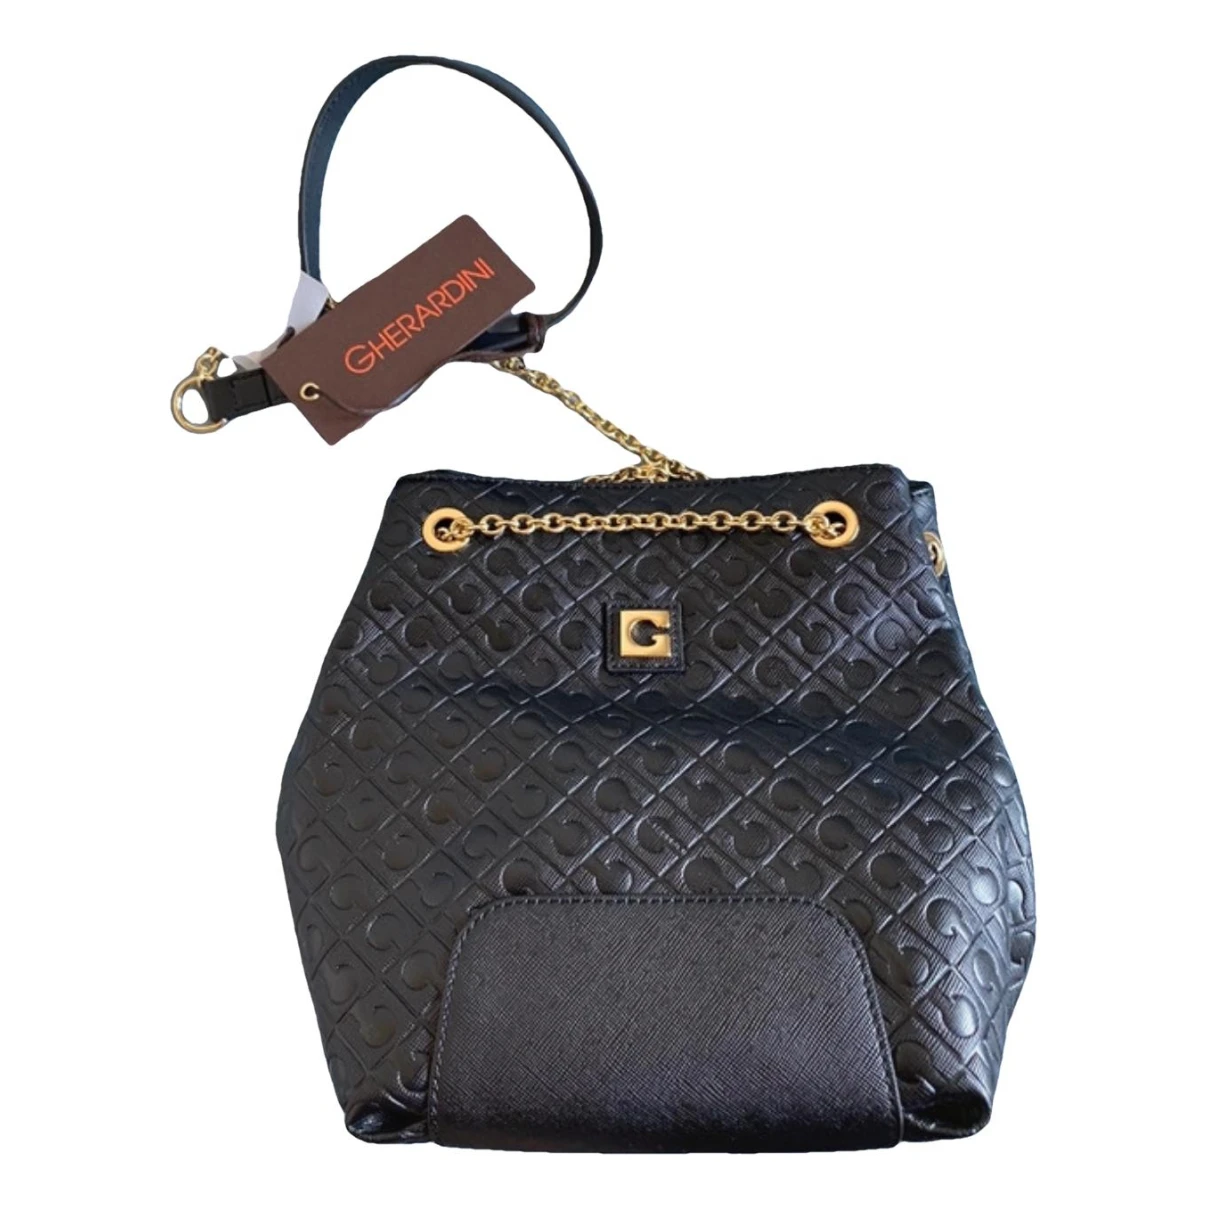 Pre-owned Gherardini Vegan Leather Handbag In Black